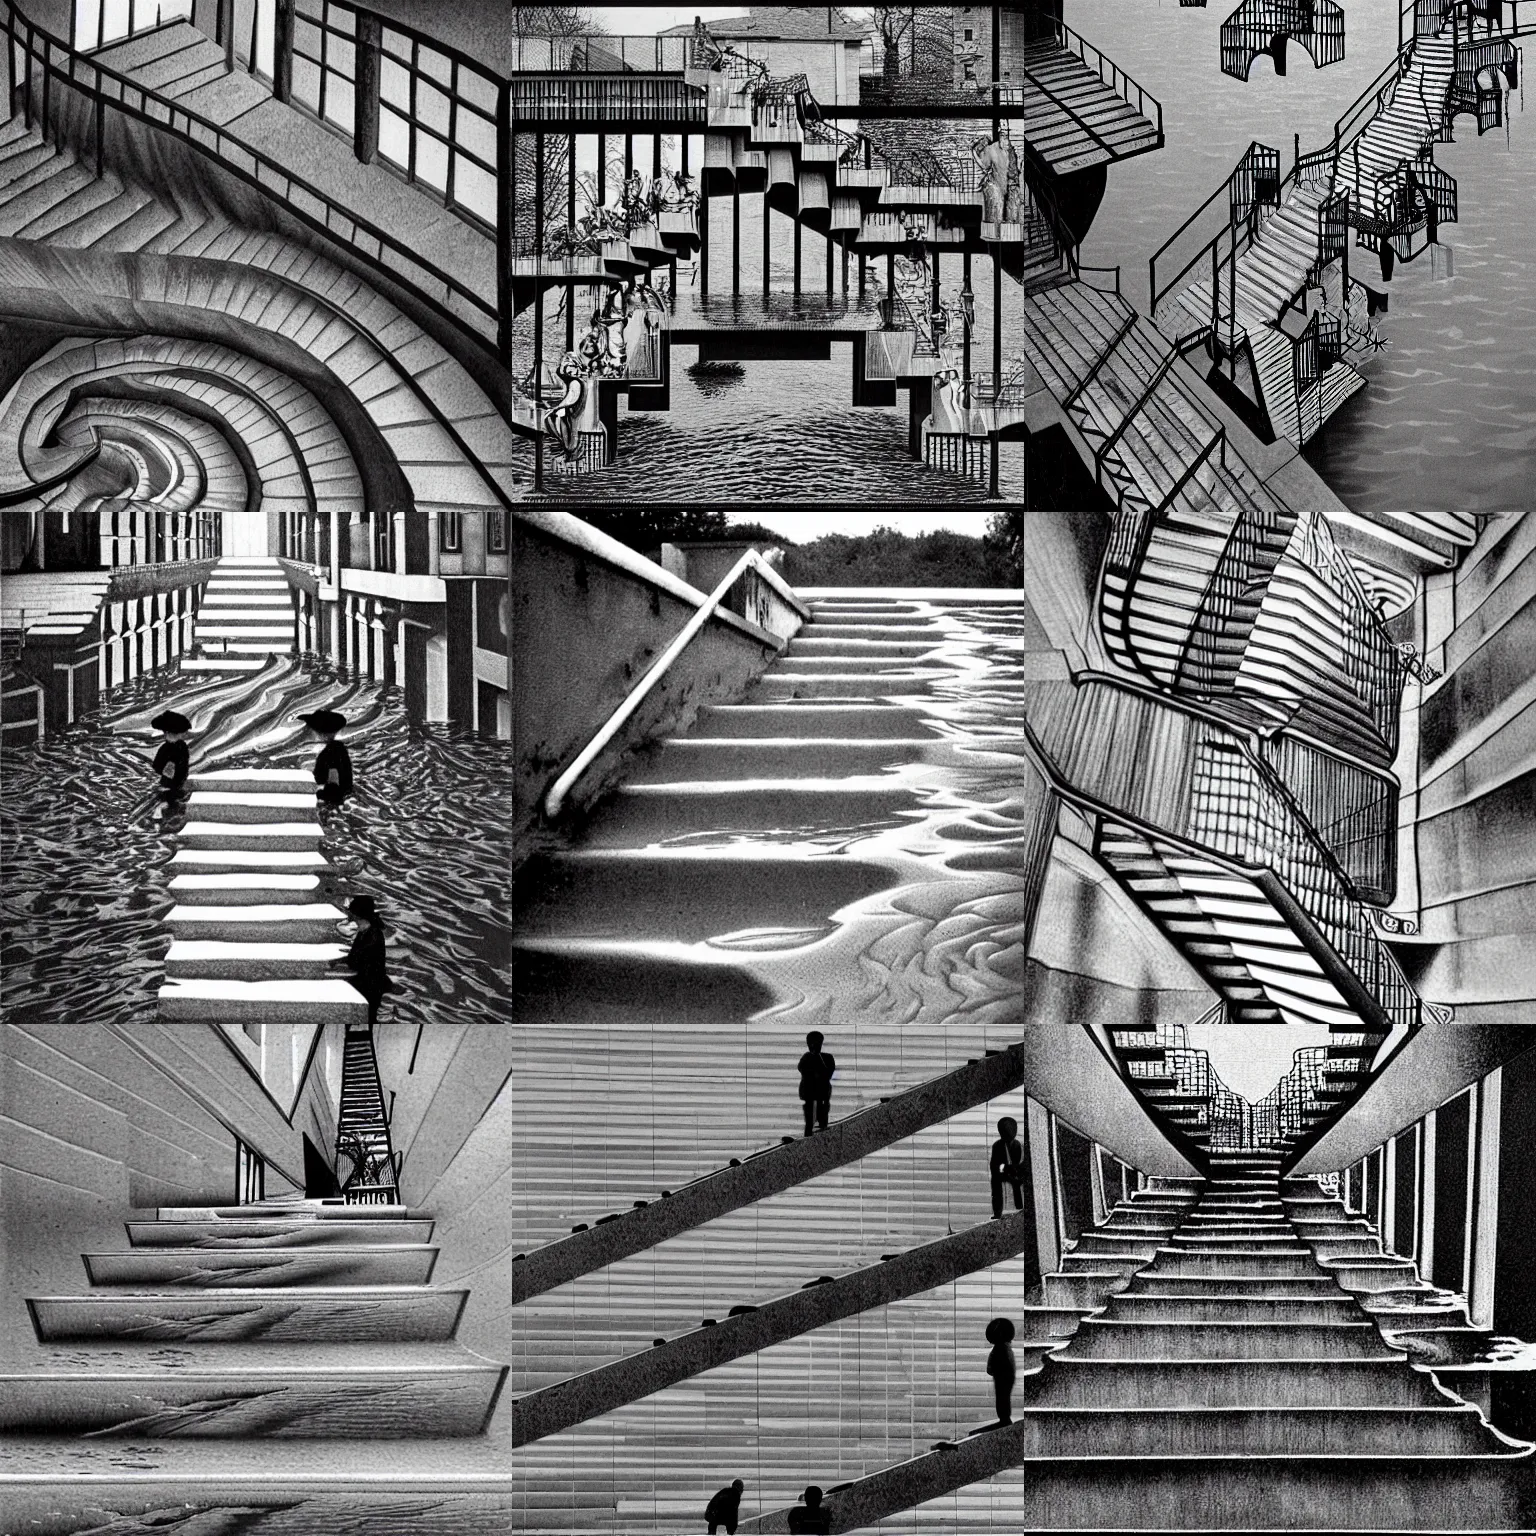 Prompt: mc escher's stairs flooding, surreal, by mc escher